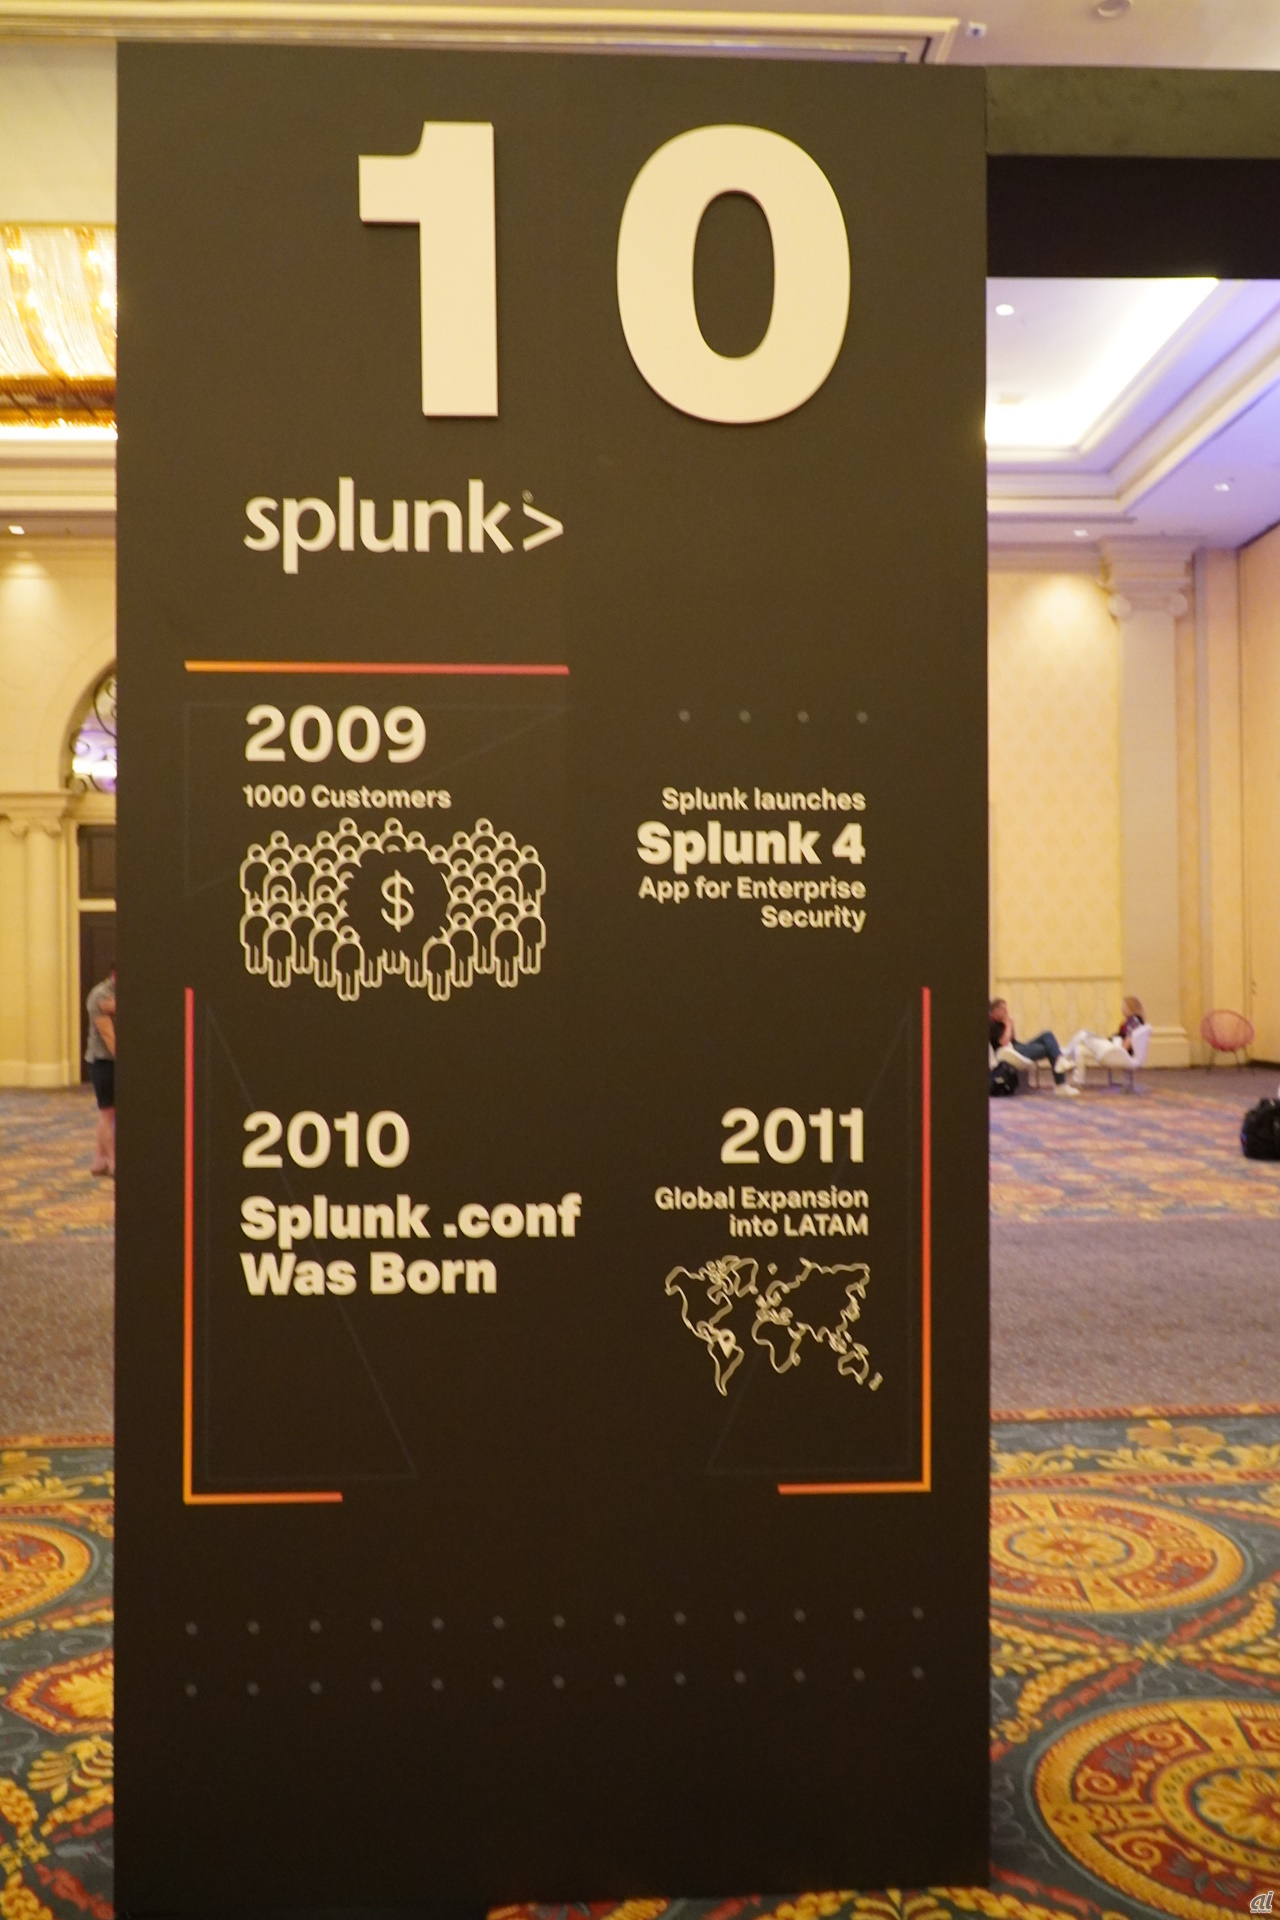 2009年に顧客数は1000を突破し、「Splunk 4」をリリース。2010年には年次カンファレンス「Splunk .conf」が始まり、2011年にラテンアメリカ地域に進出した。